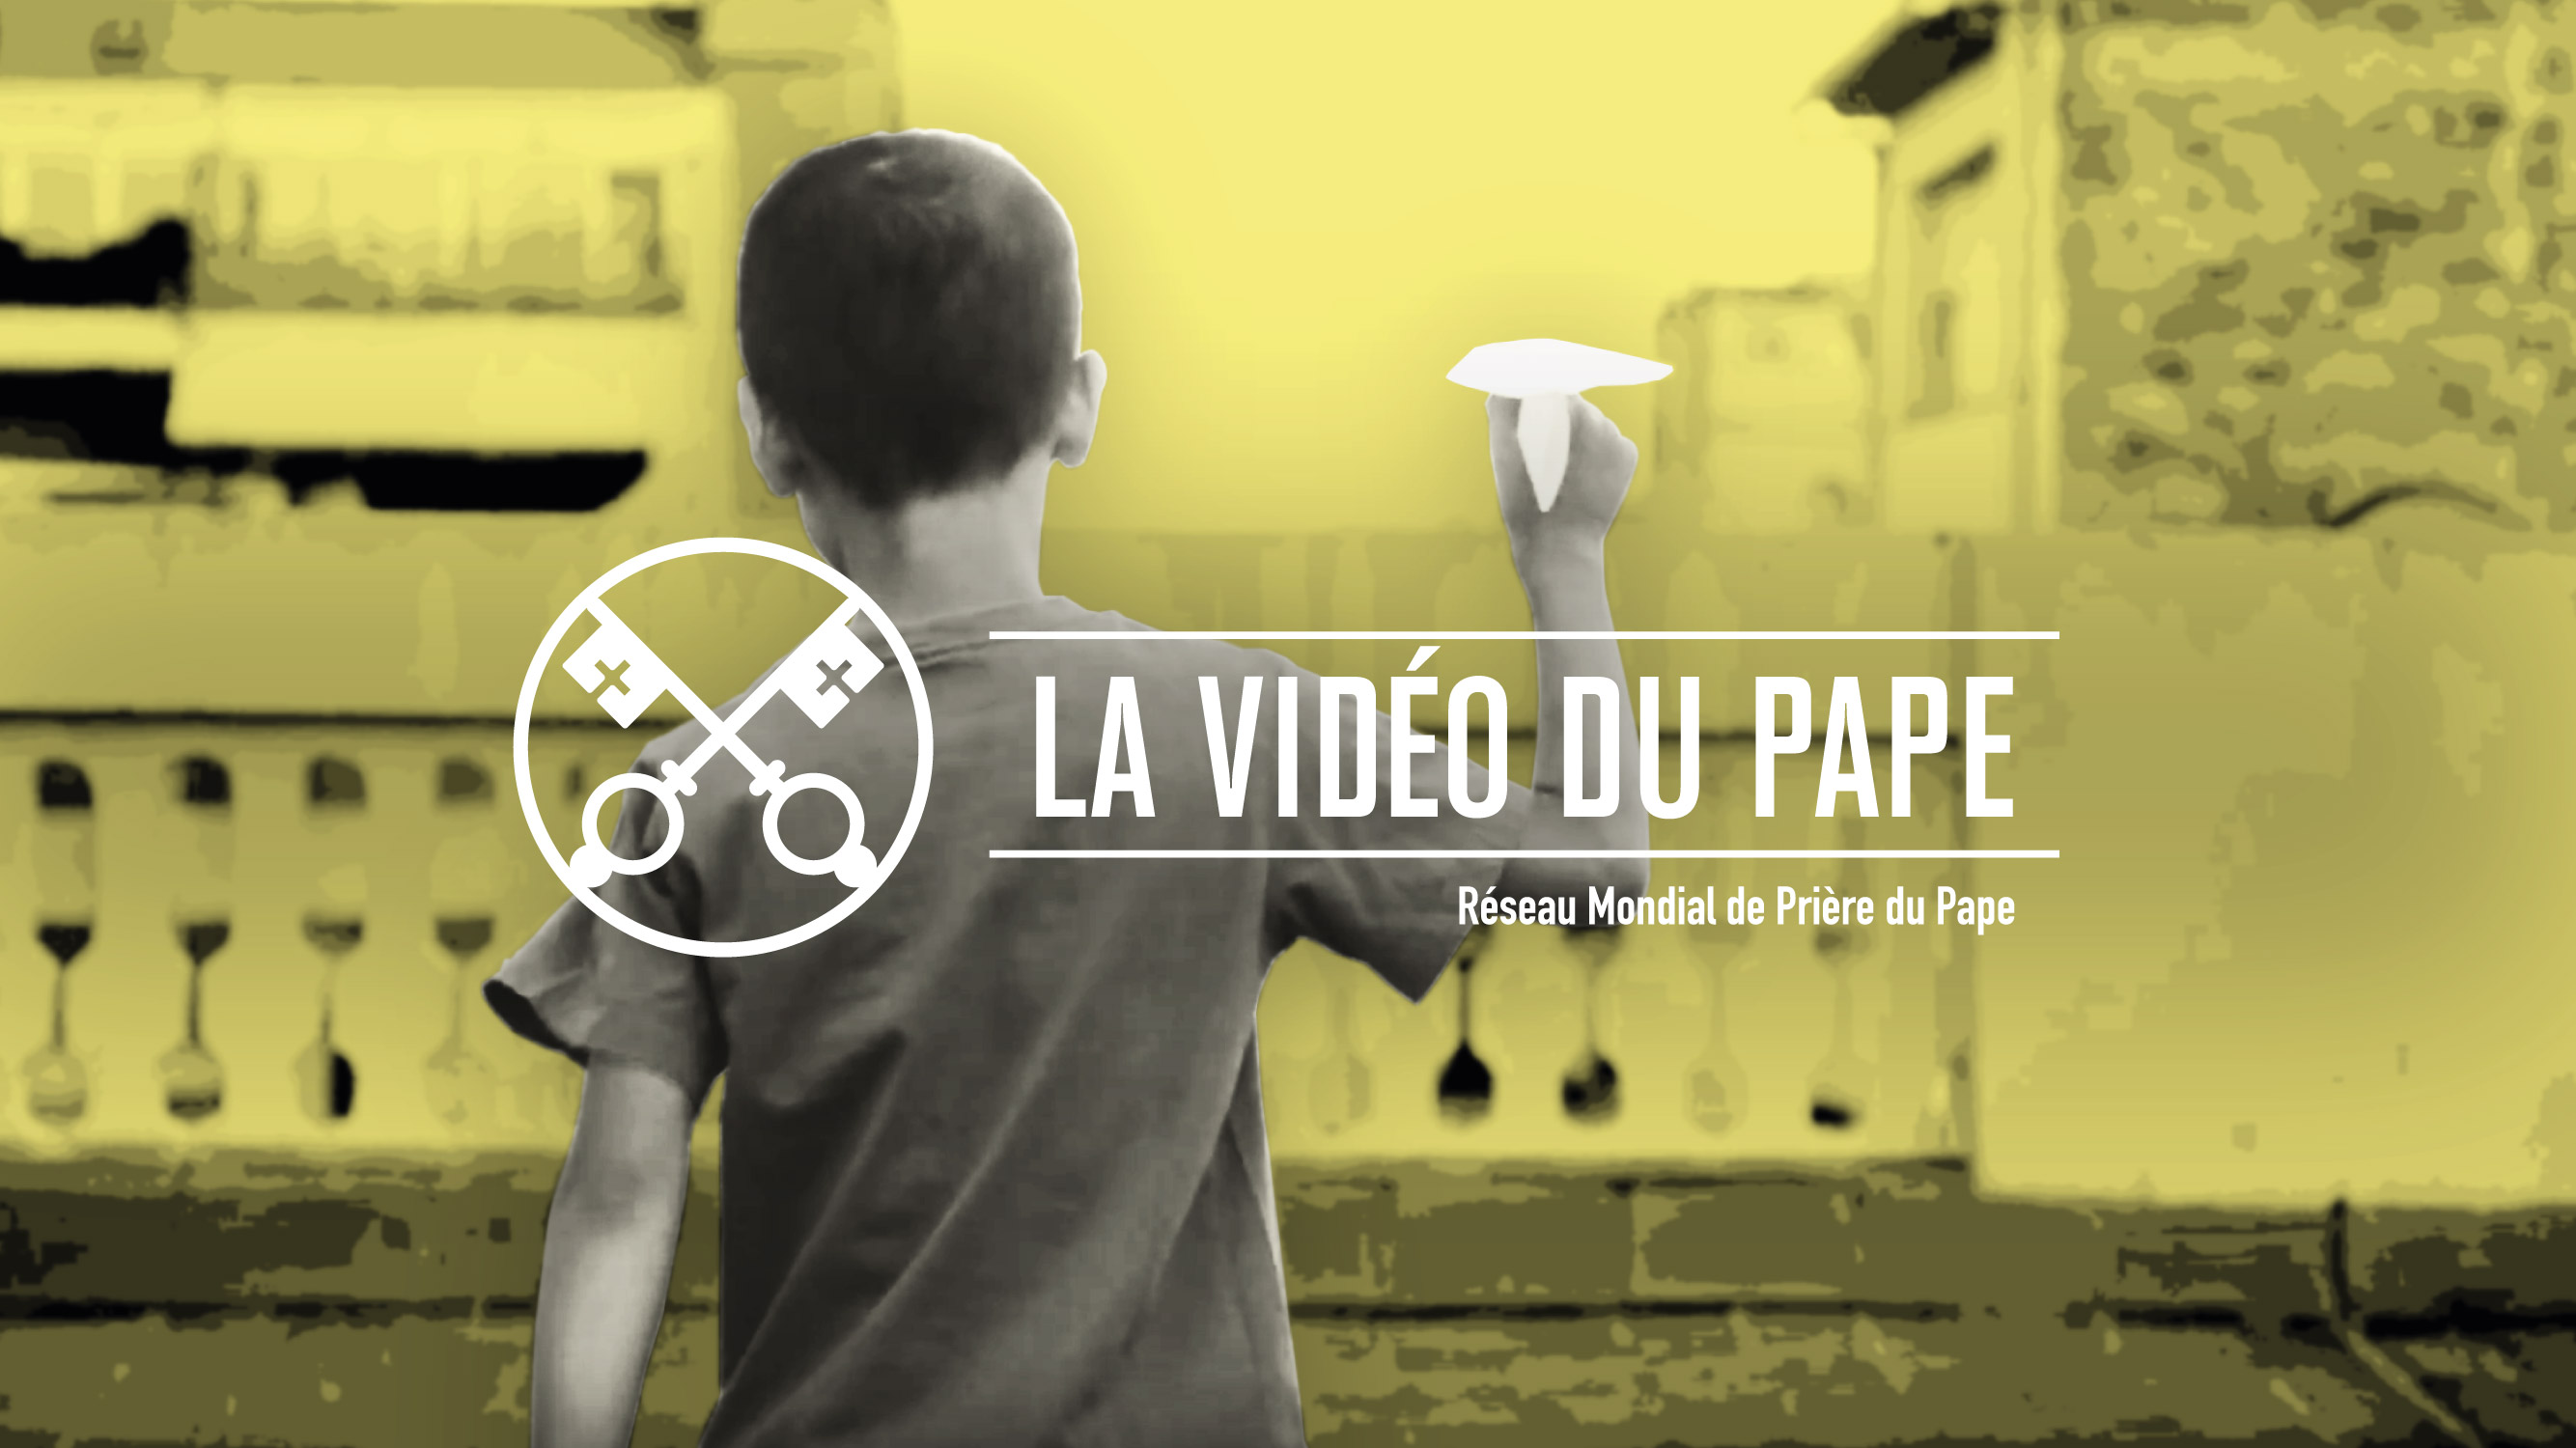 Official Image - TPV 10 2019 FR - La Video du Pape - Printemps missionnaire dans l'Eglise